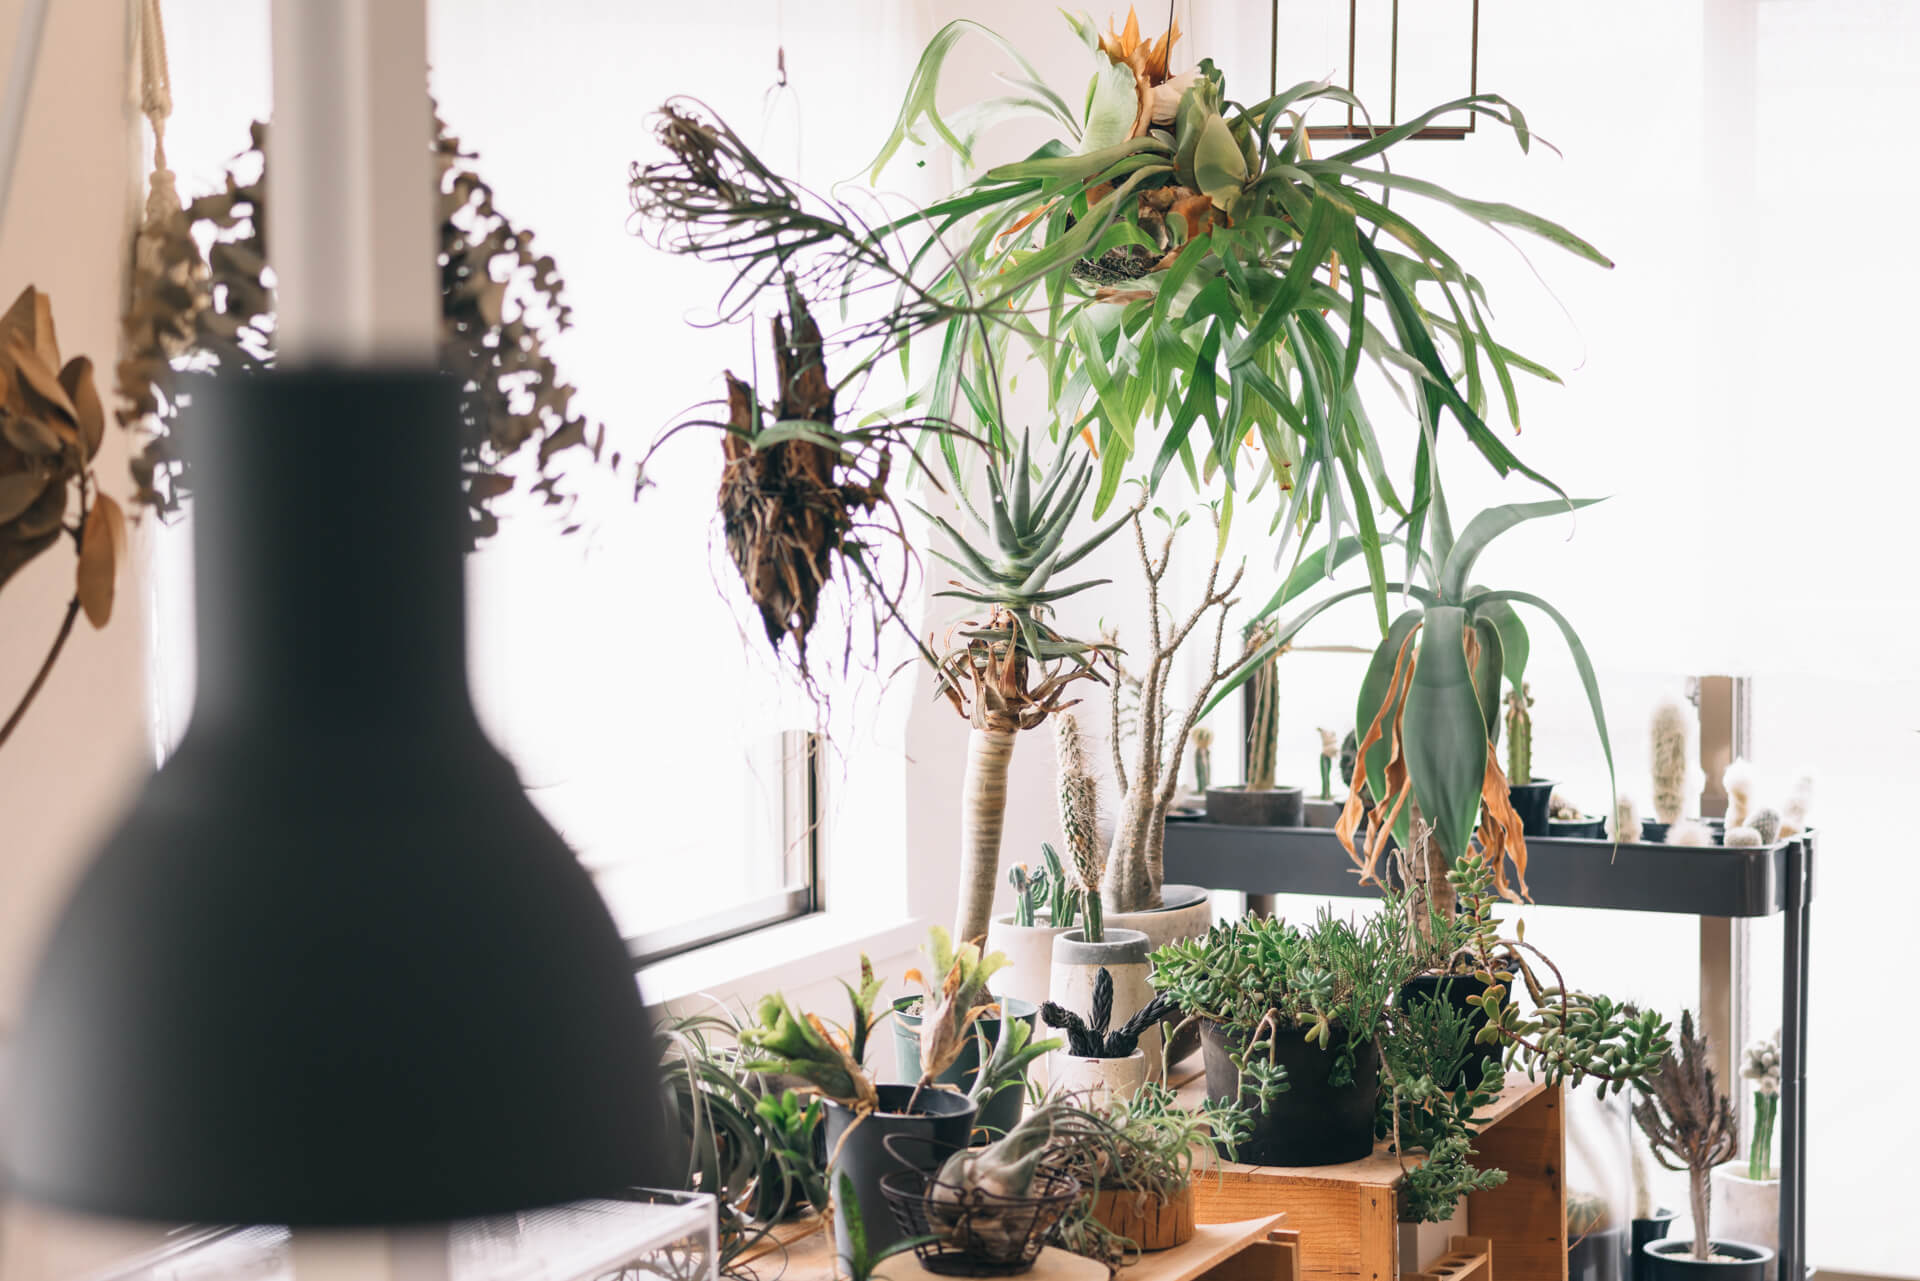 goodroom のリノベーション賃貸「TOMOS（トモス）」に暮らす、Atsushiさんのお部屋。ゆっくりと生長するサボテンや多肉植物を中心に、たくさんの珍しい植物が集まるリビングは圧巻です。